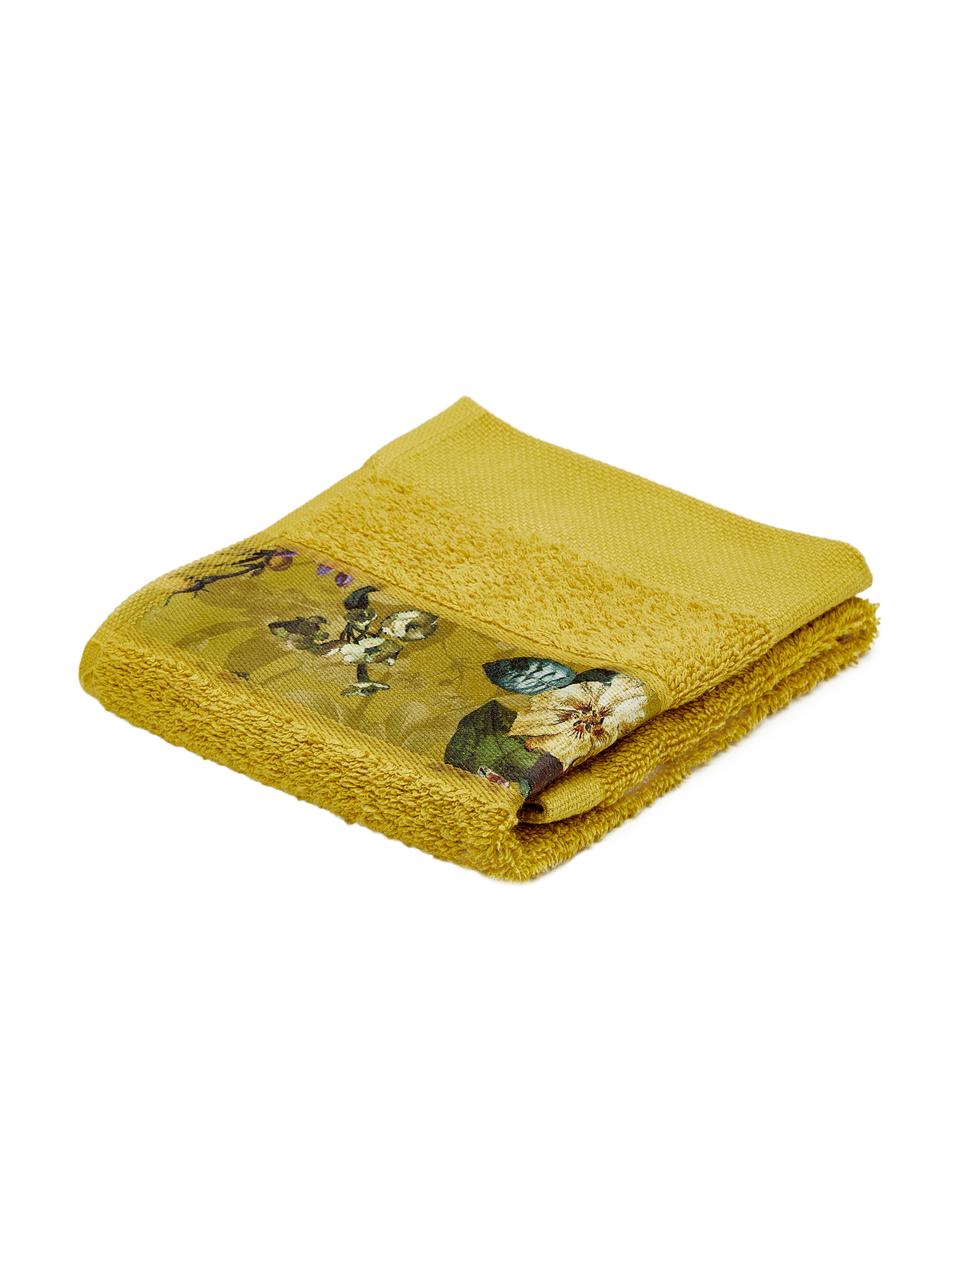 Ručník s pruhem s květinovým vzorem Fleur, různé velikosti, 97 % bavlna, 3 % polyester, Hořčičná žlutá, více barev, Ručník, Š 60 cm, D 100 cm